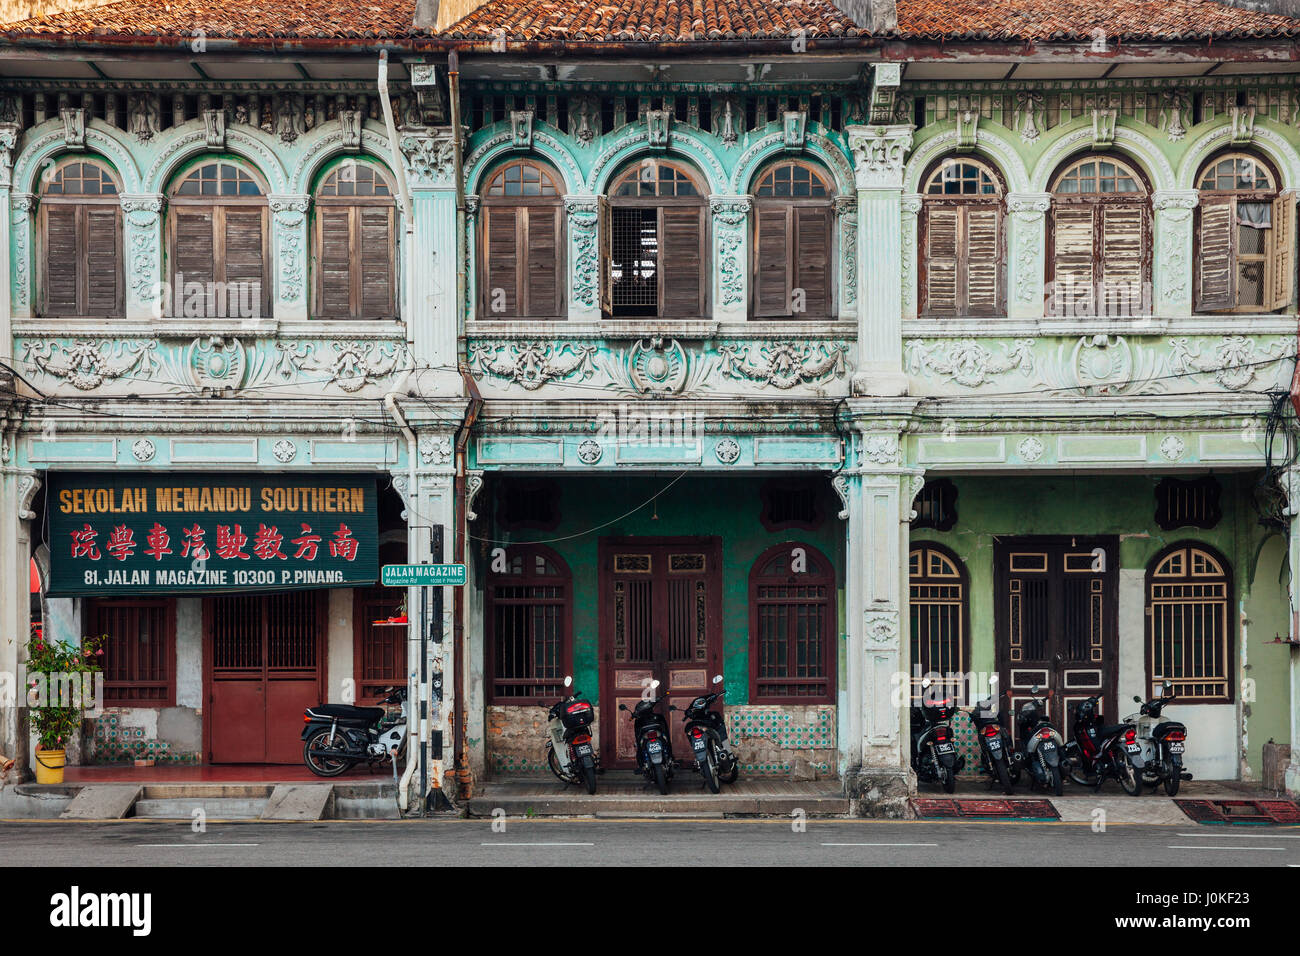 George Town, Malaisie - Mars 27, 2016 : Façade de l'ancien bâtiment situé dans la zone tampon du patrimoine de l'UNESCO, George Town, Penang, Malaisie, le 27 mars Banque D'Images